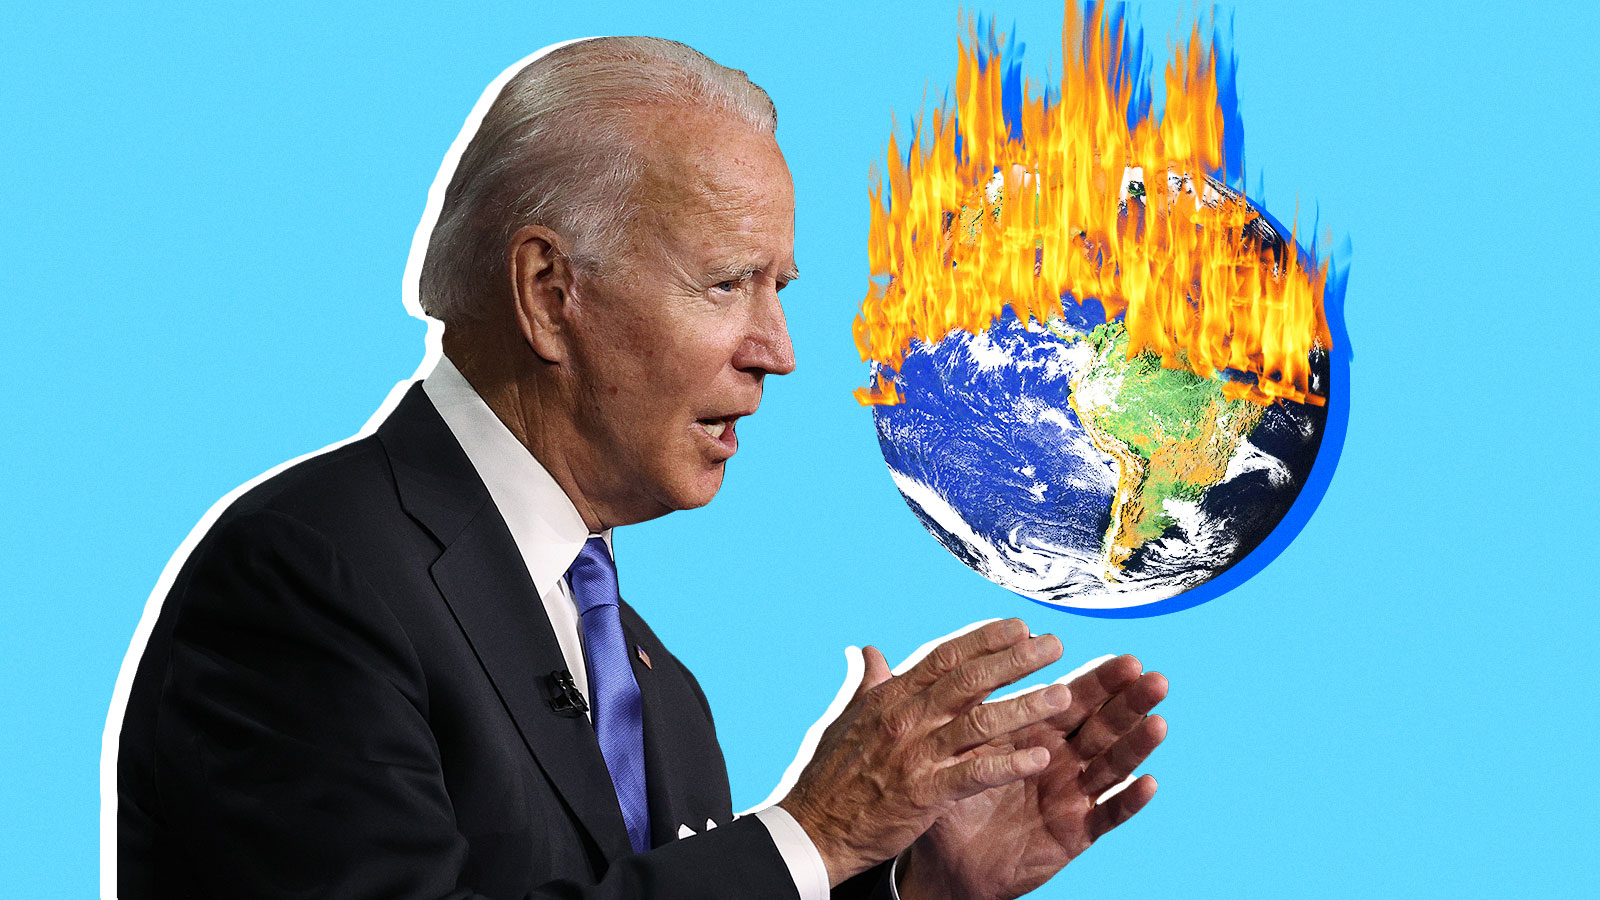 Por que Joe Biden chama as mudanças climáticas de uma “oportunidade enorme”?